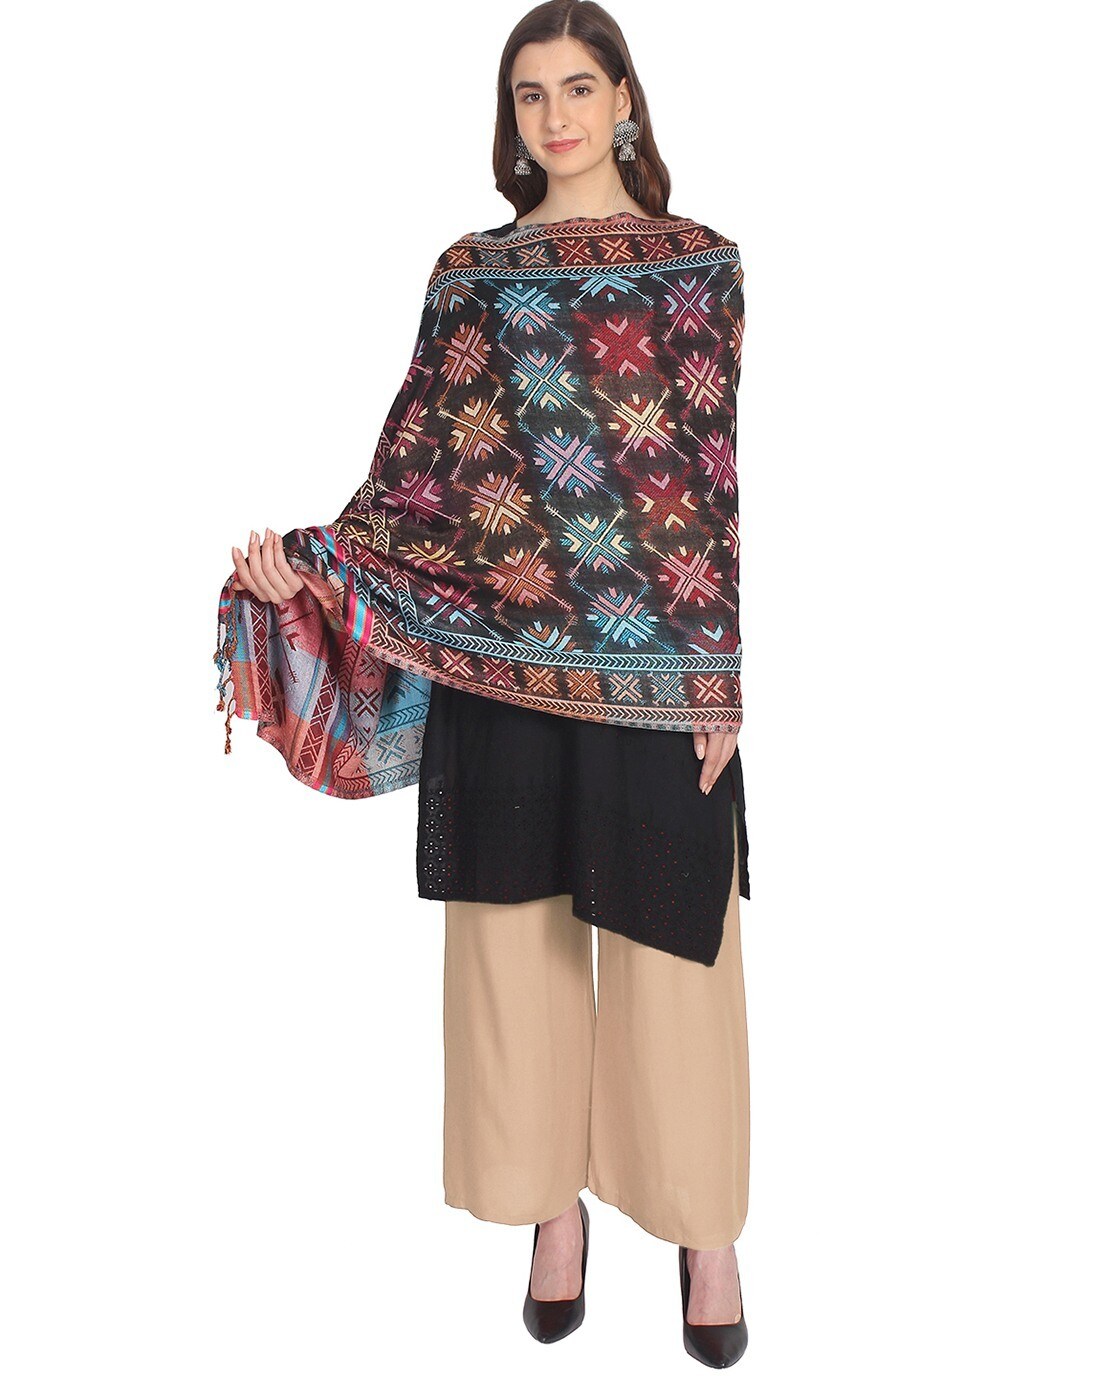 discount 92% NoName shawl Multicolored M WOMEN FASHION Accessories Shawl Multicolored Size M 